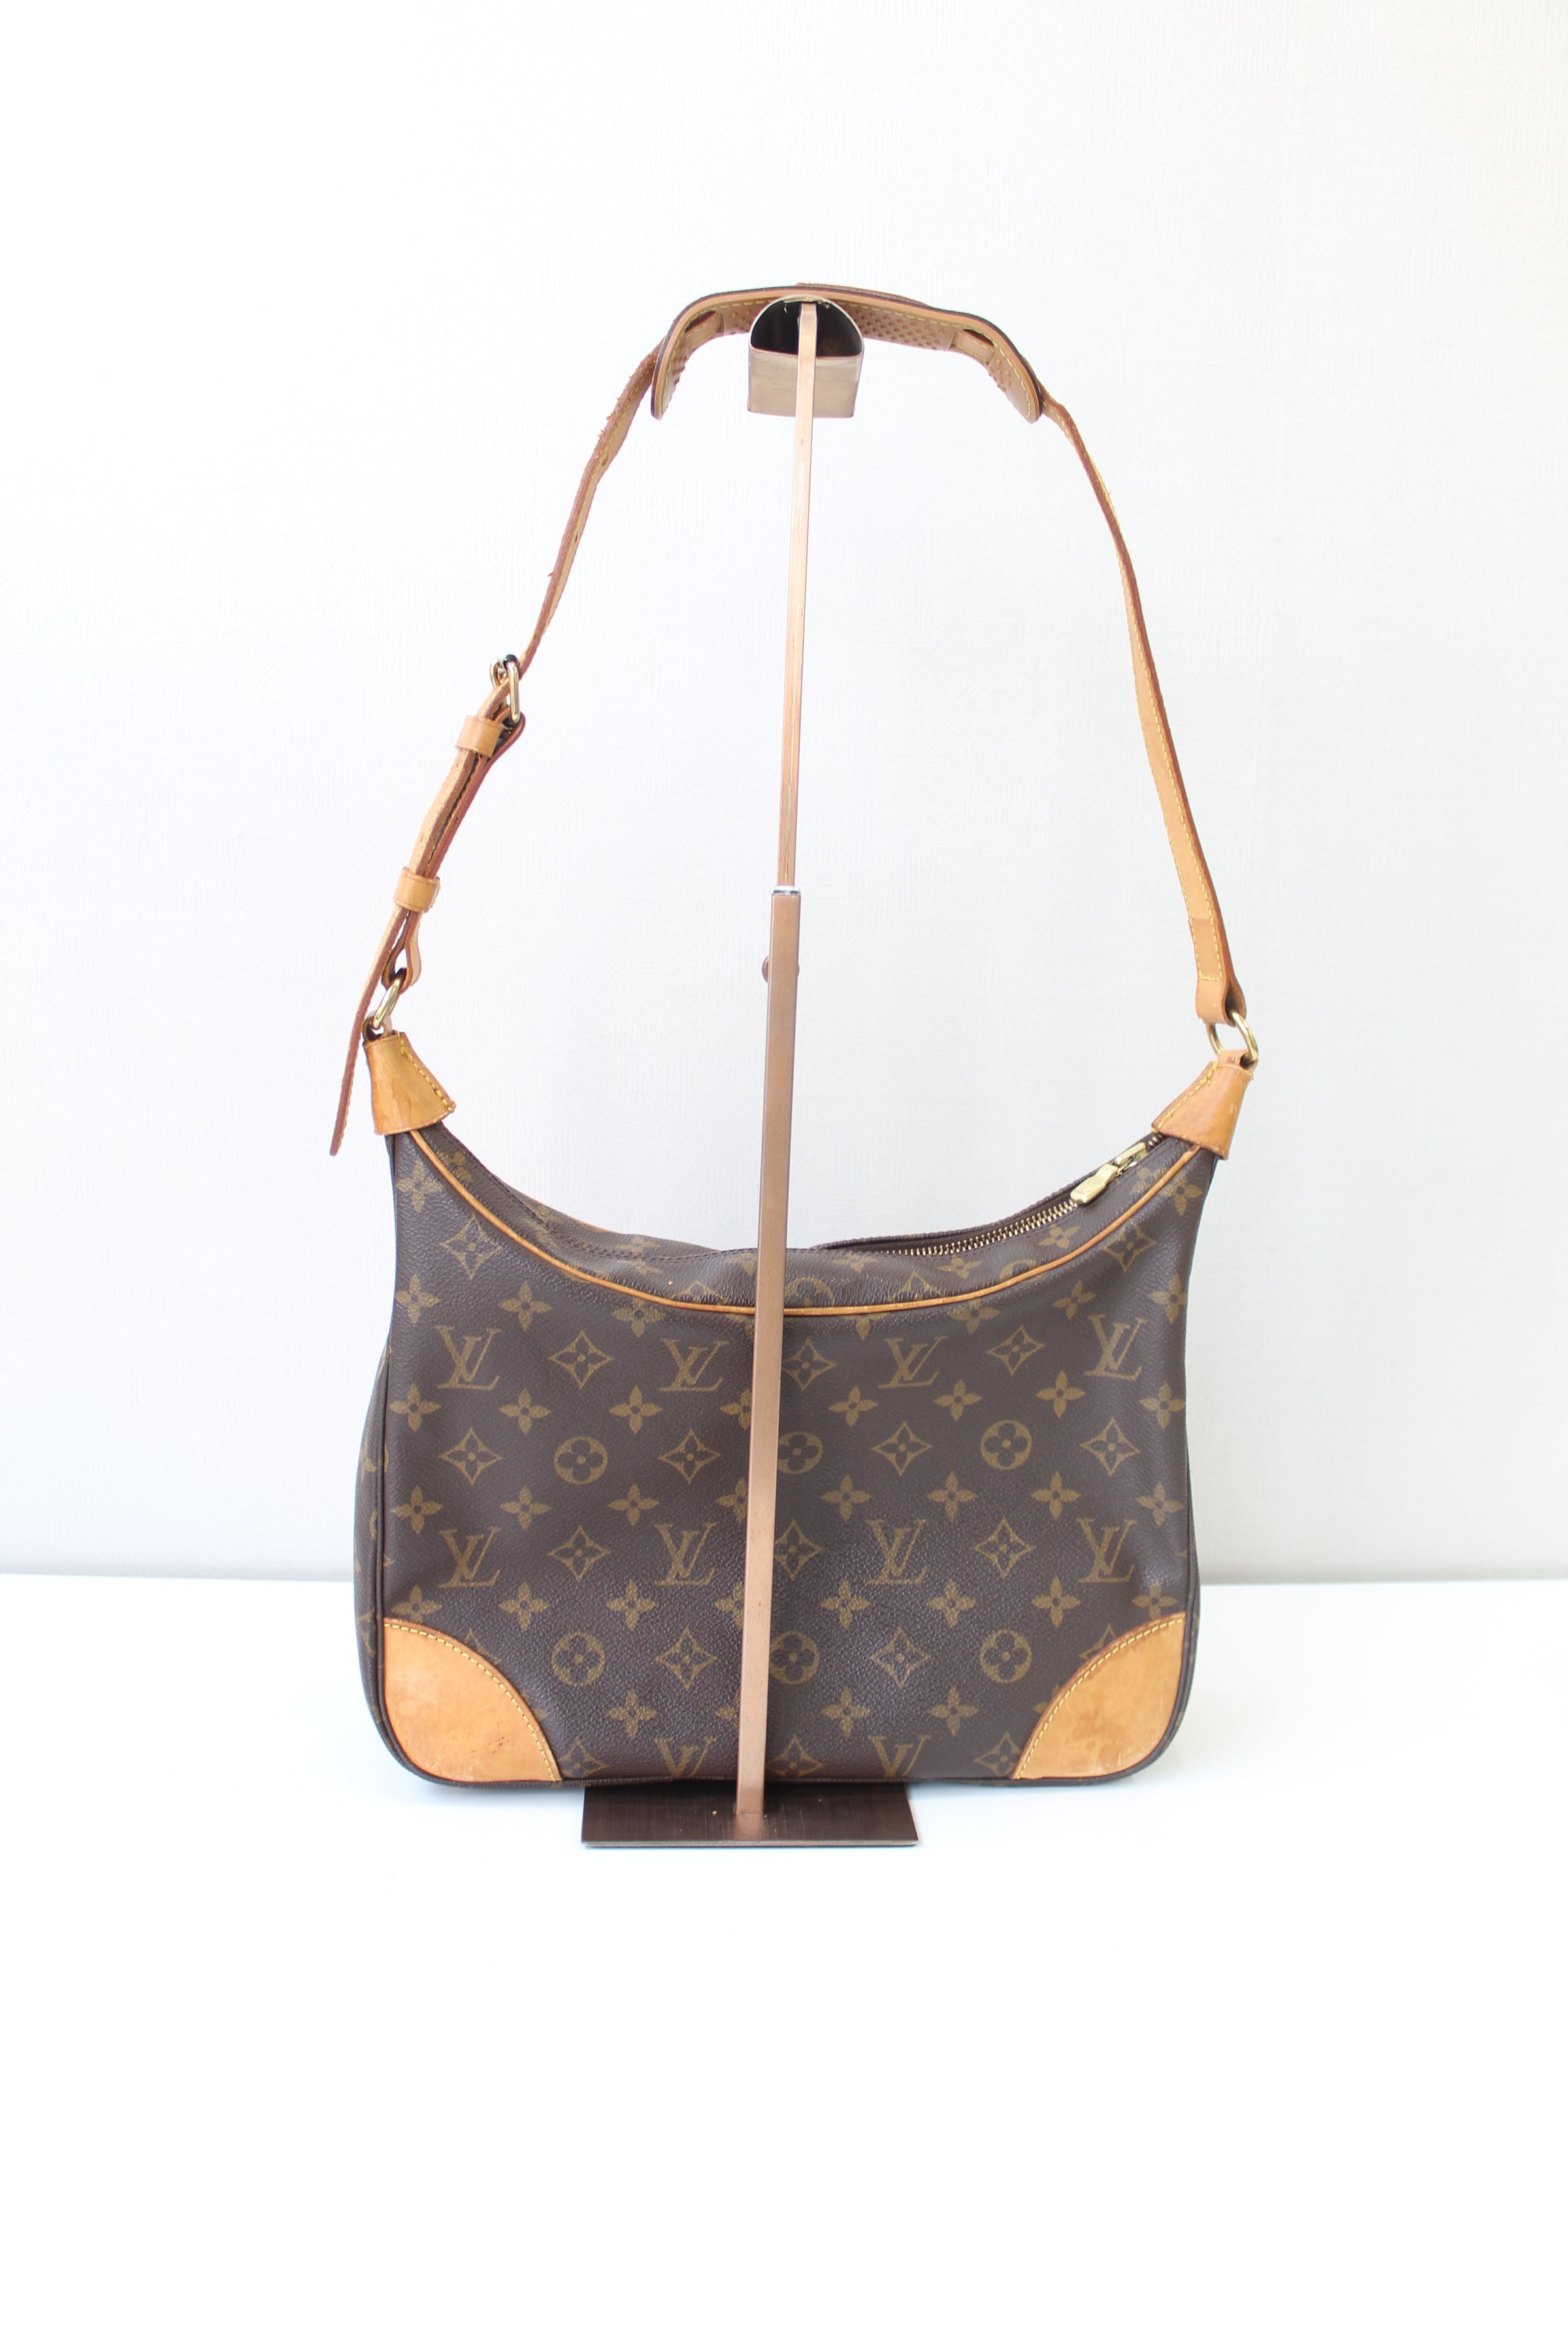 Louis Vuitton Boulogne 30 Shoulder Bag - Farfetch